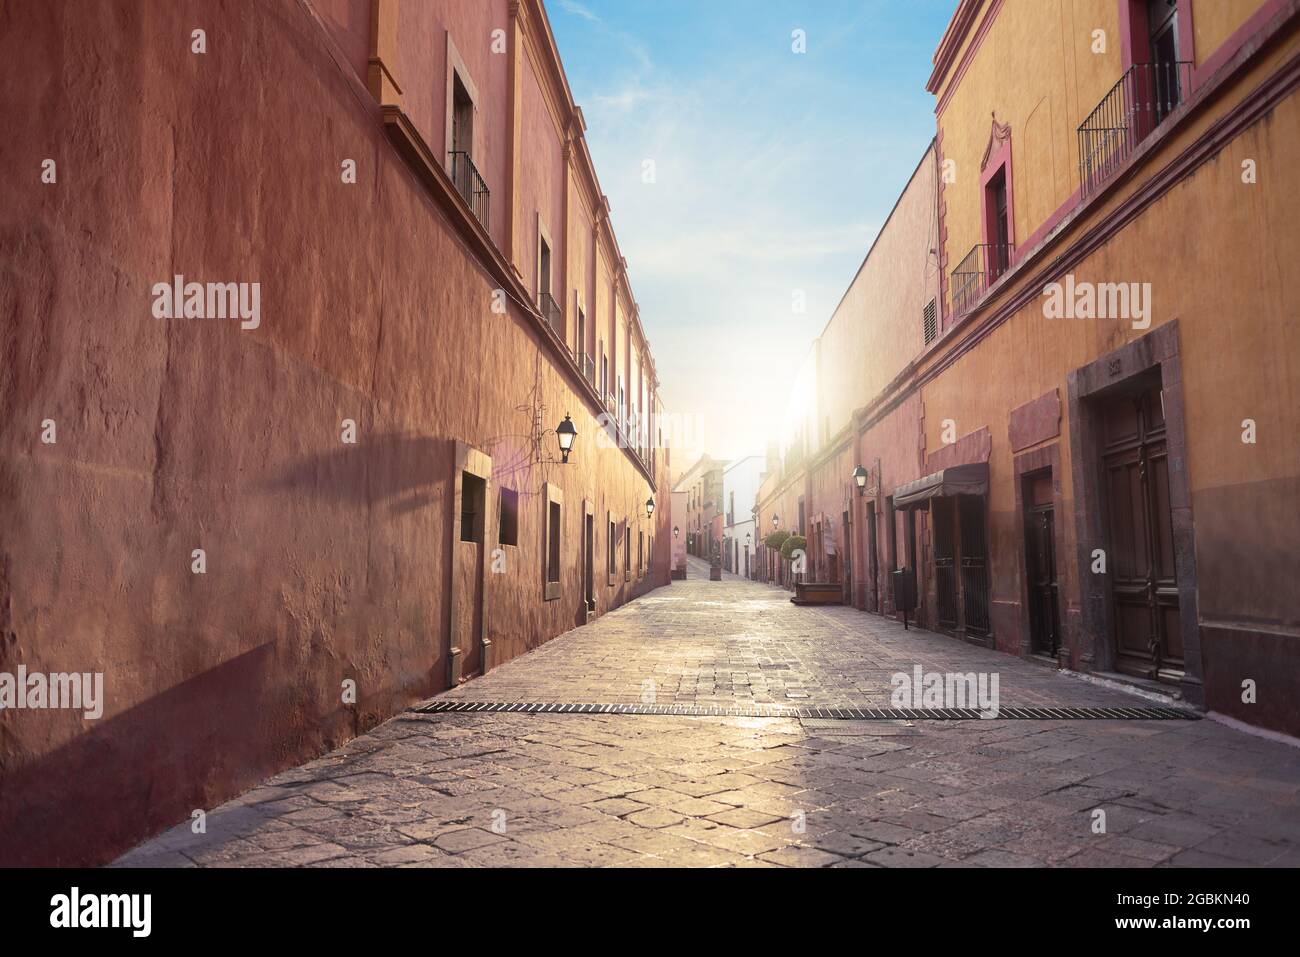 Rue touristique traditionnelle dans le centre de Querétaro, ville historique, personne, lever du soleil, architecture coloniale Banque D'Images